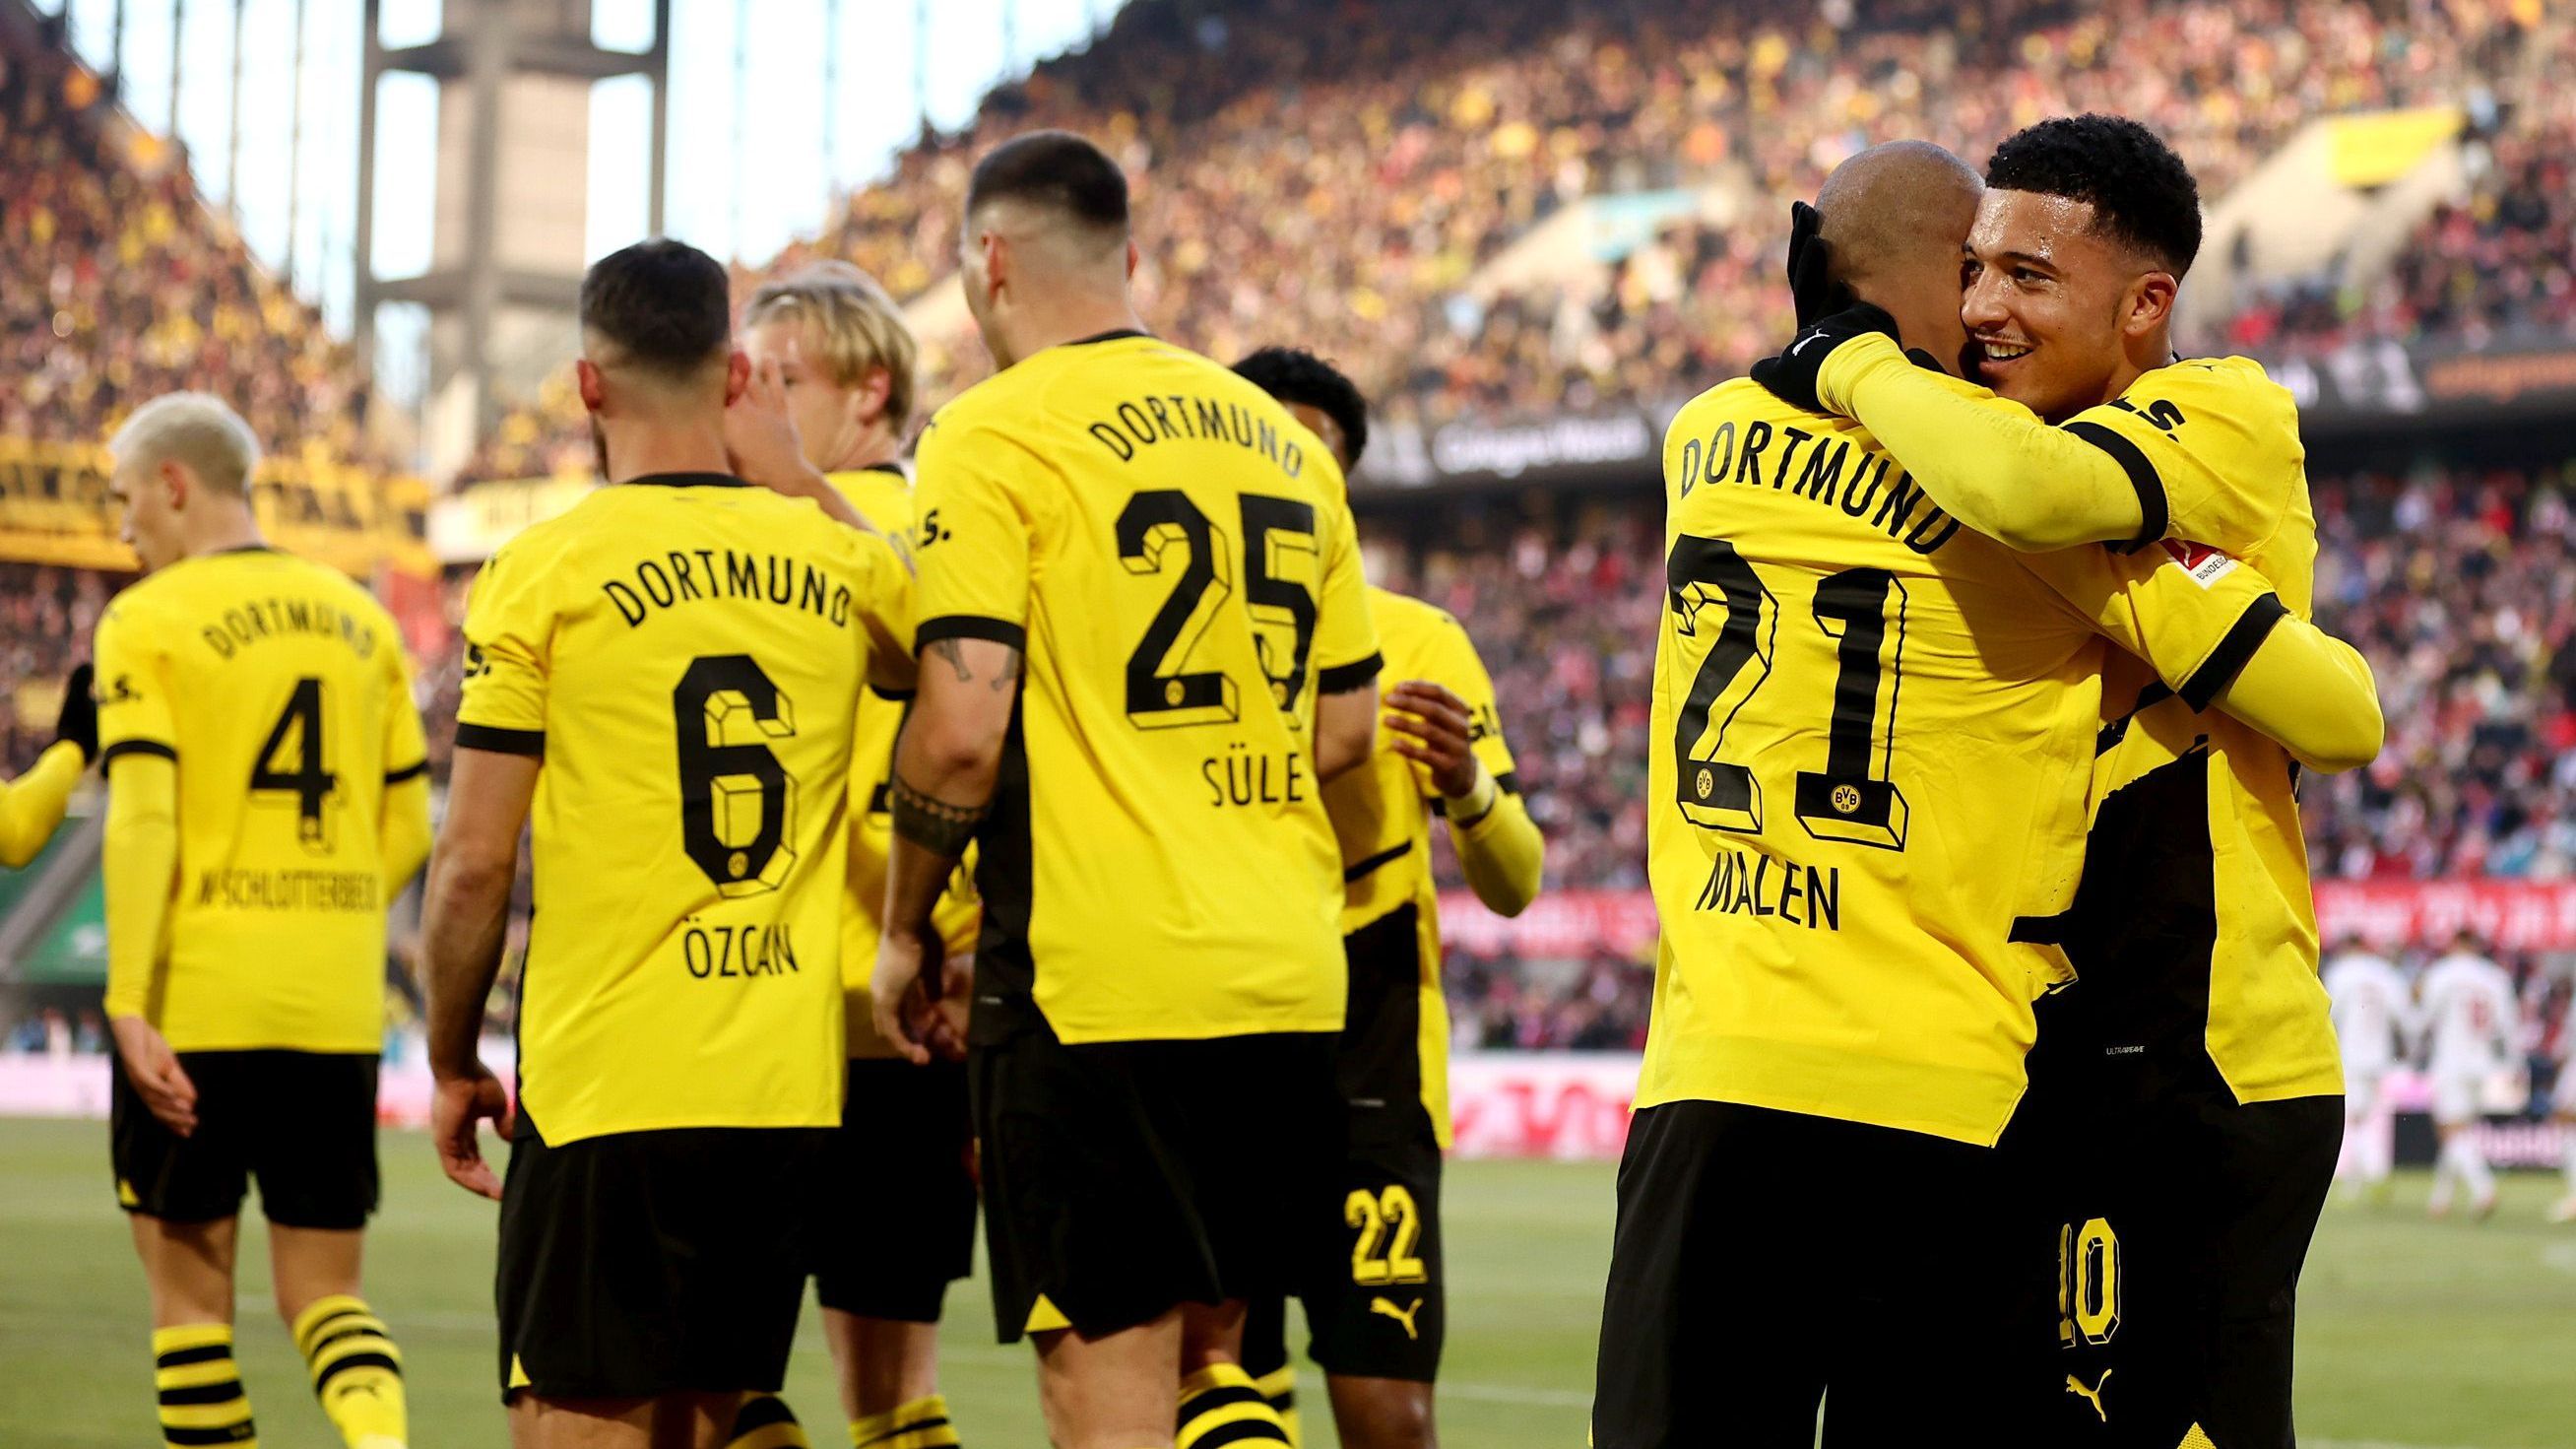 <strong>Die BVB-Stars in der Einzelkritik</strong><br>Borussia Dortmund kommt am Samstagnachmittag zu einem souveränen 4:0-Sieg beim 1. FC Köln. <strong><em>ran</em></strong> hat die BVB-Stars in der Einzelkritik benotet.